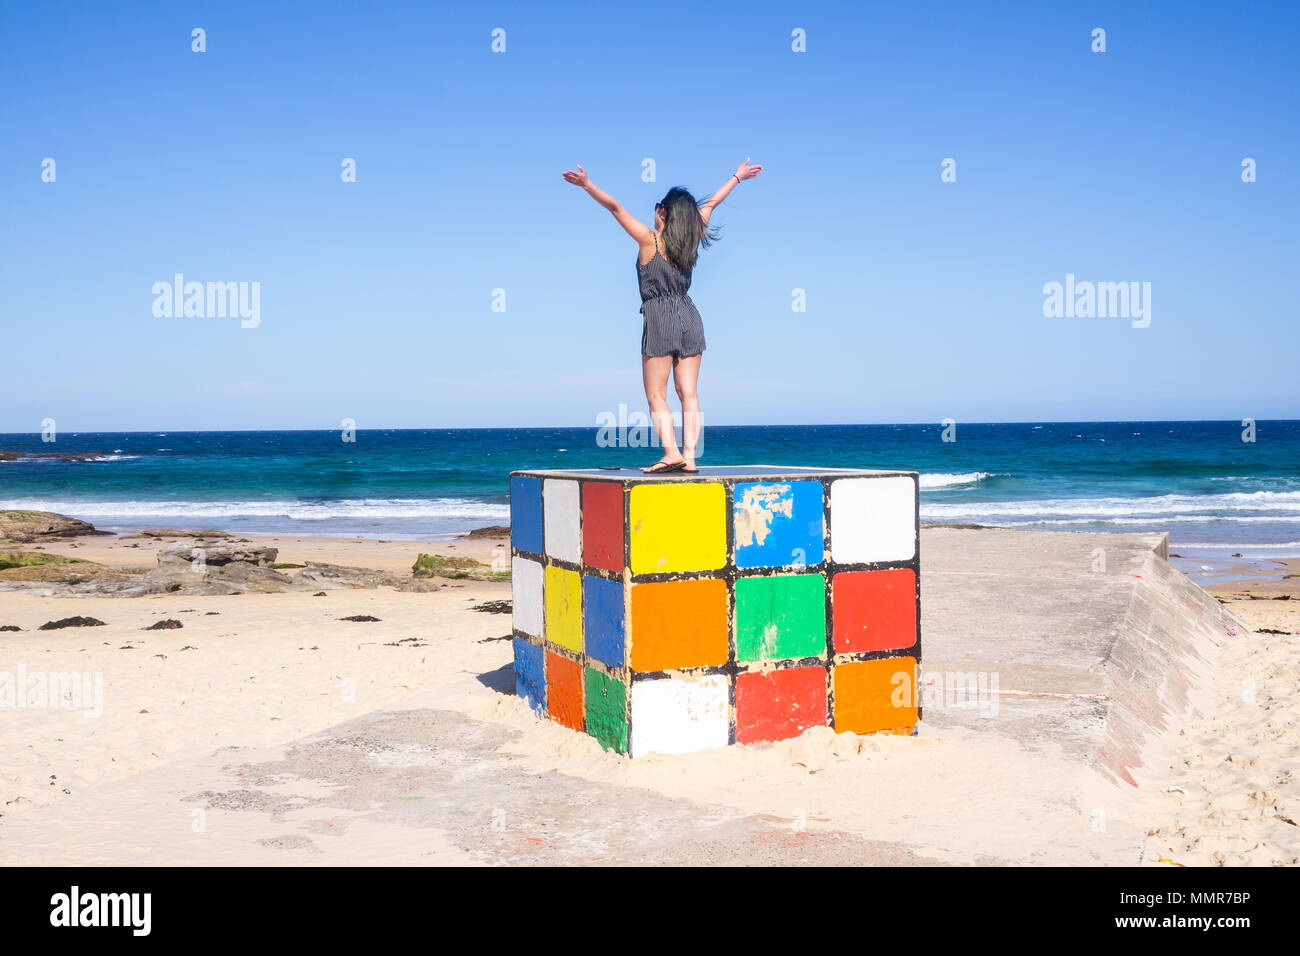 Jeune femme se dresse sur Rubik cube géant à Maroubra Beach, Sydney, Australie Banque D'Images